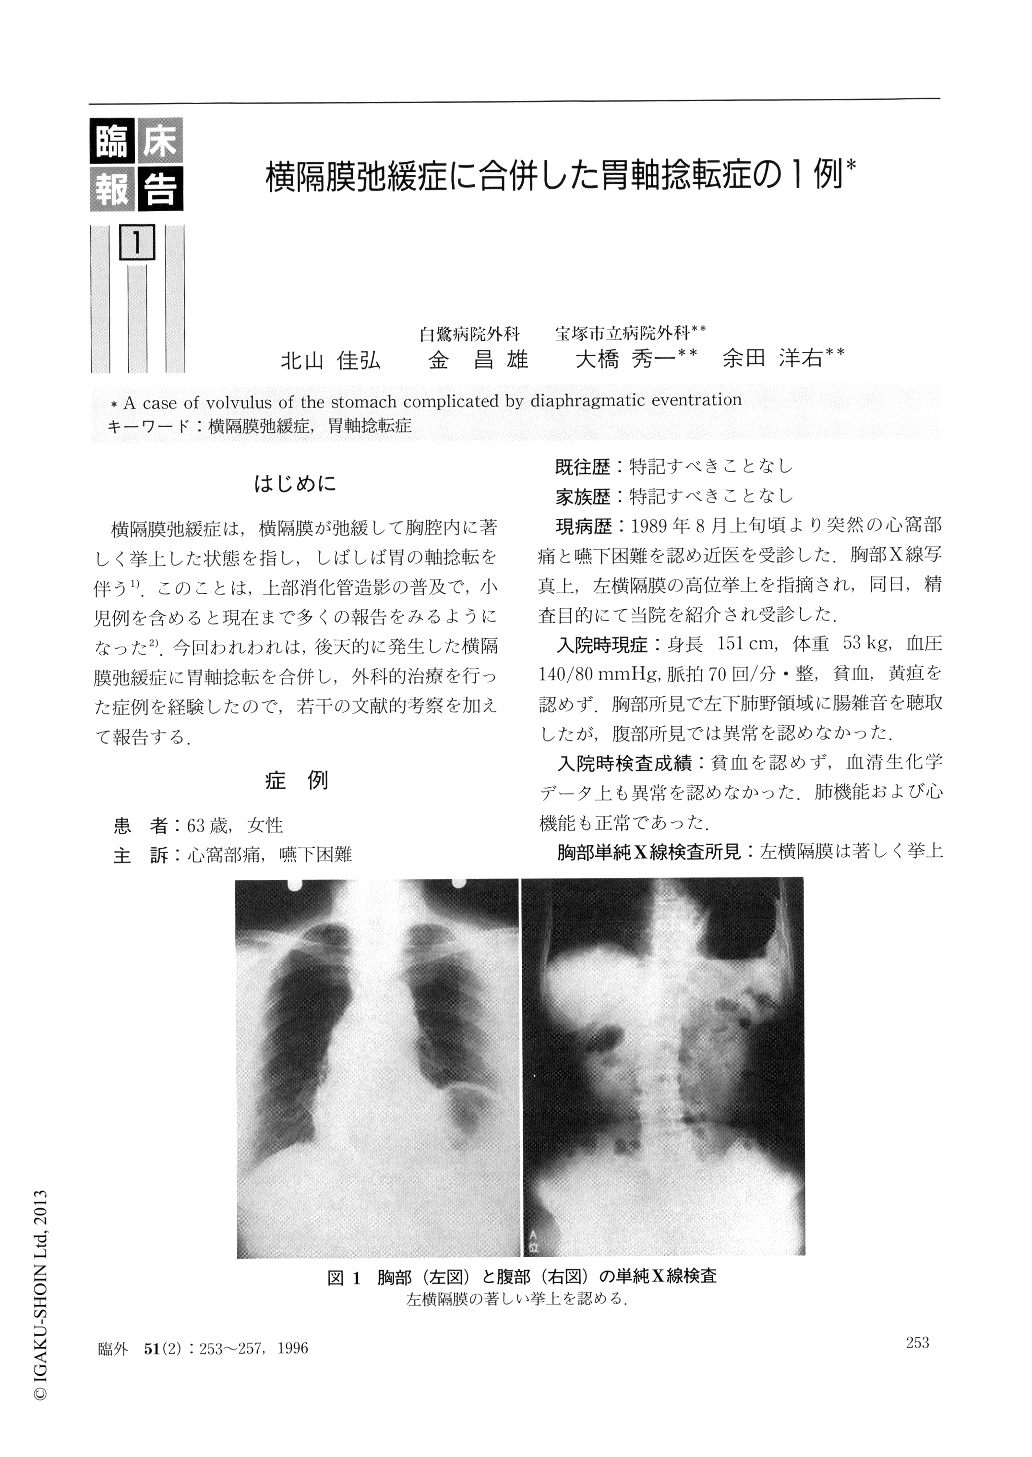 横隔膜弛緩症に合併した胃軸捻転症の1例 臨床外科 51巻2号 医書 Jp